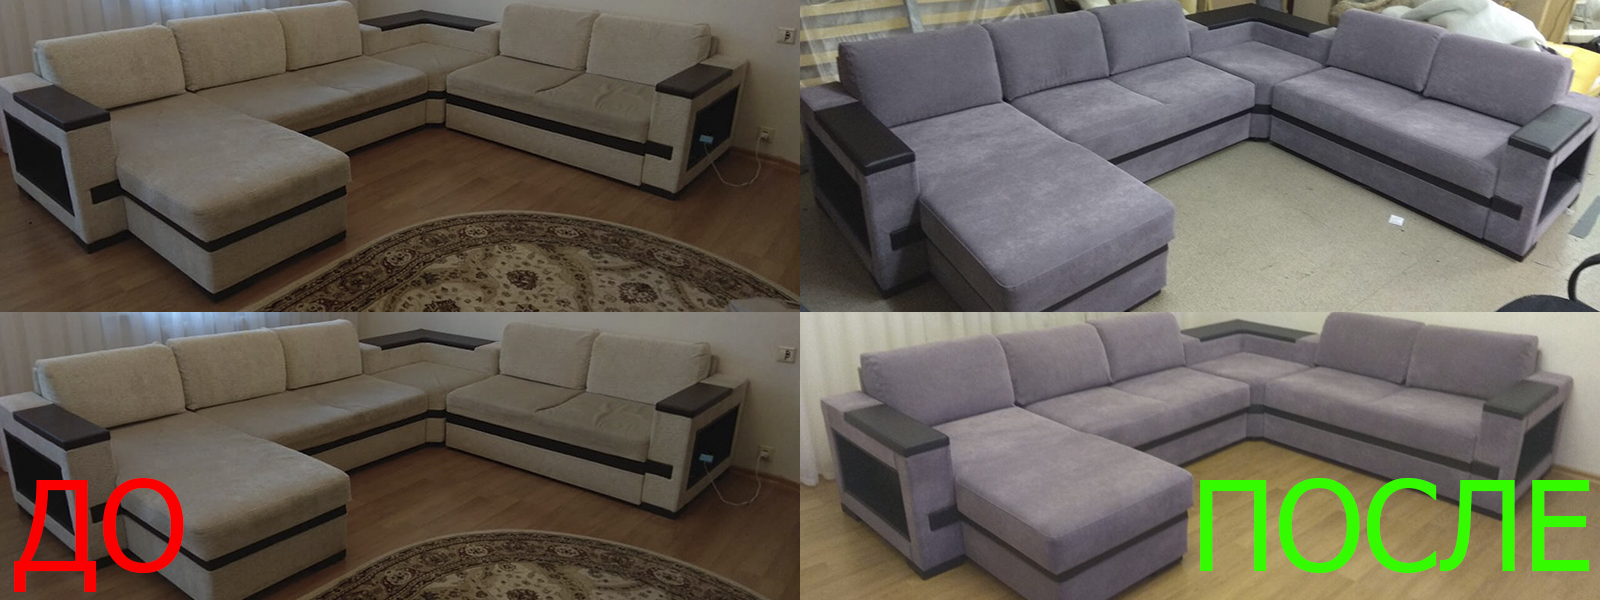 Обтяжка мебели на дому в Краснодаре недорого по адекватной цене